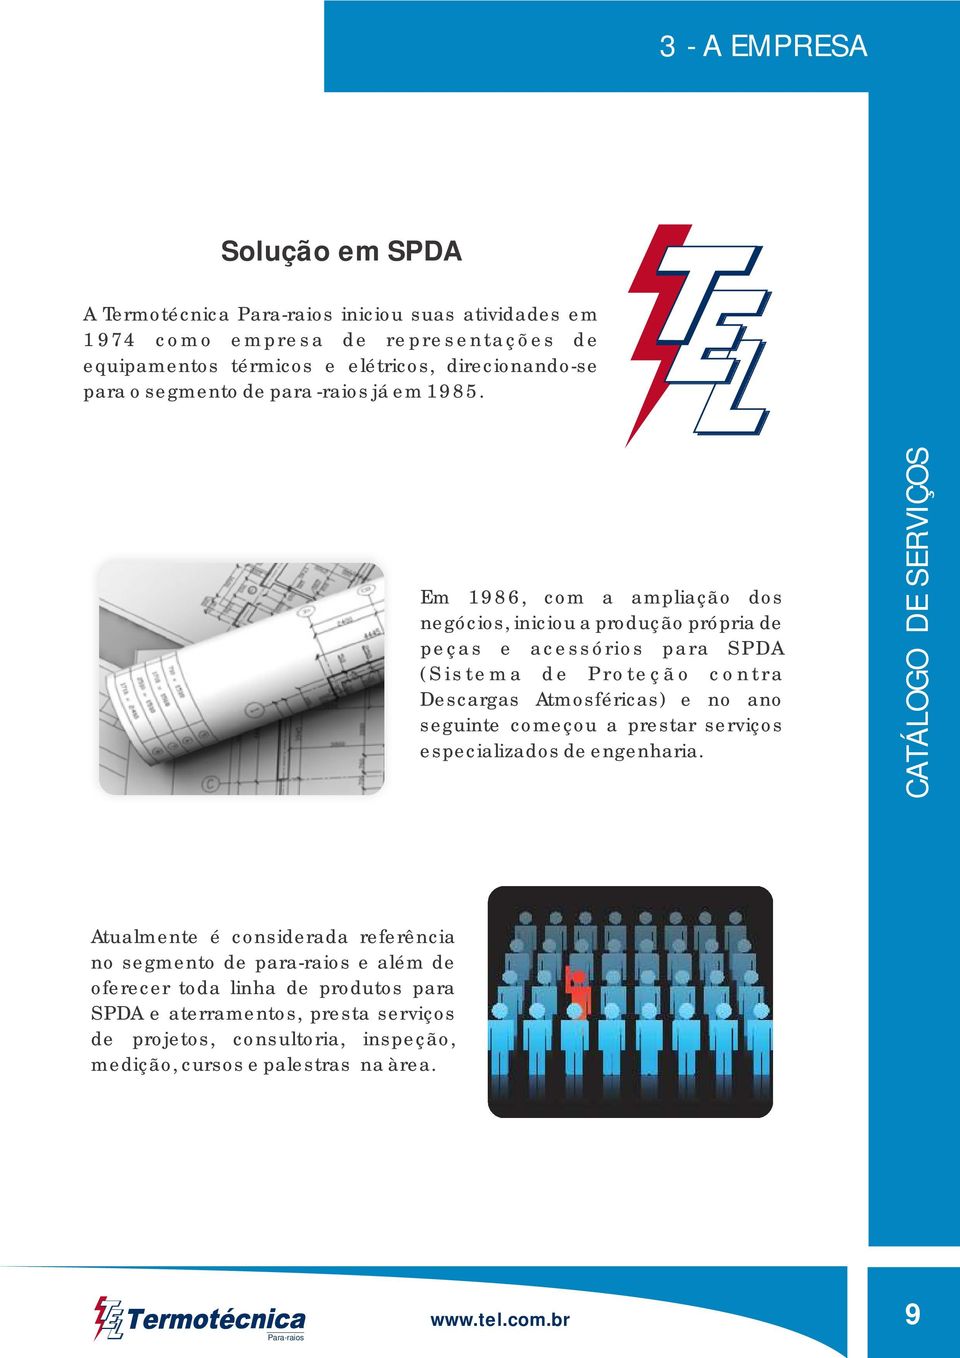 Em 1986, com a ampliação dos negócios, iniciou a produção própria de peças e acessórios para SPDA (Sistema de Proteção contra Descargas Atmosféricas) e no ano